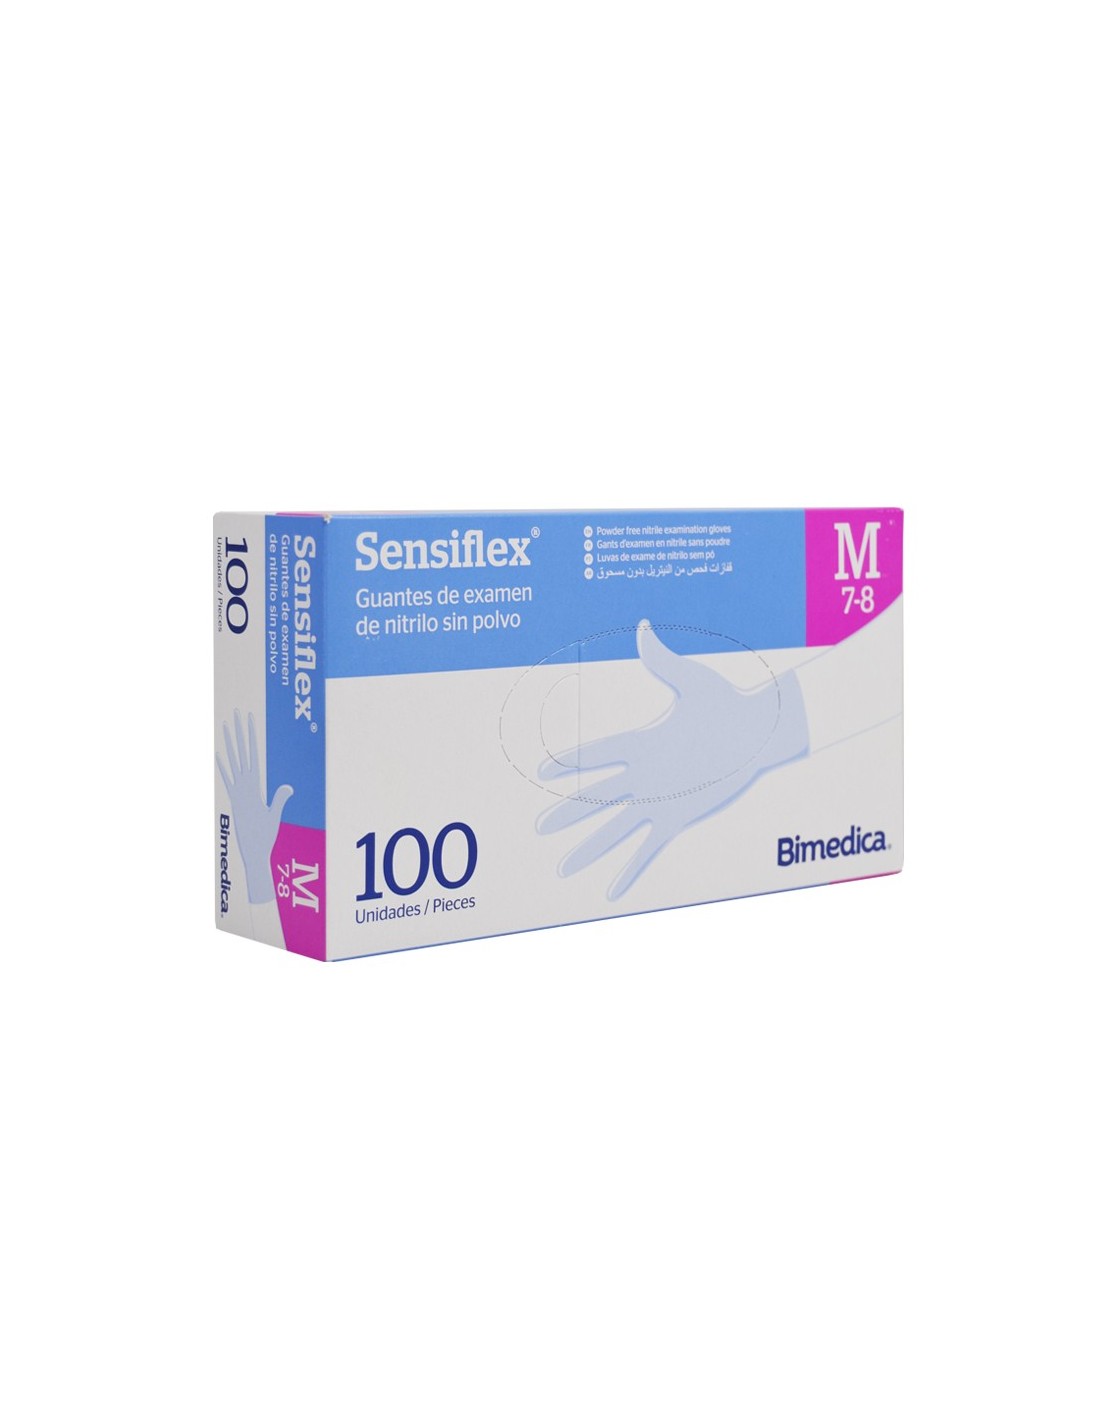 Sensiflex Deep Blue guantes de nitrilo talla S, caja de 100 unidades -  Guantes Kalamazoo